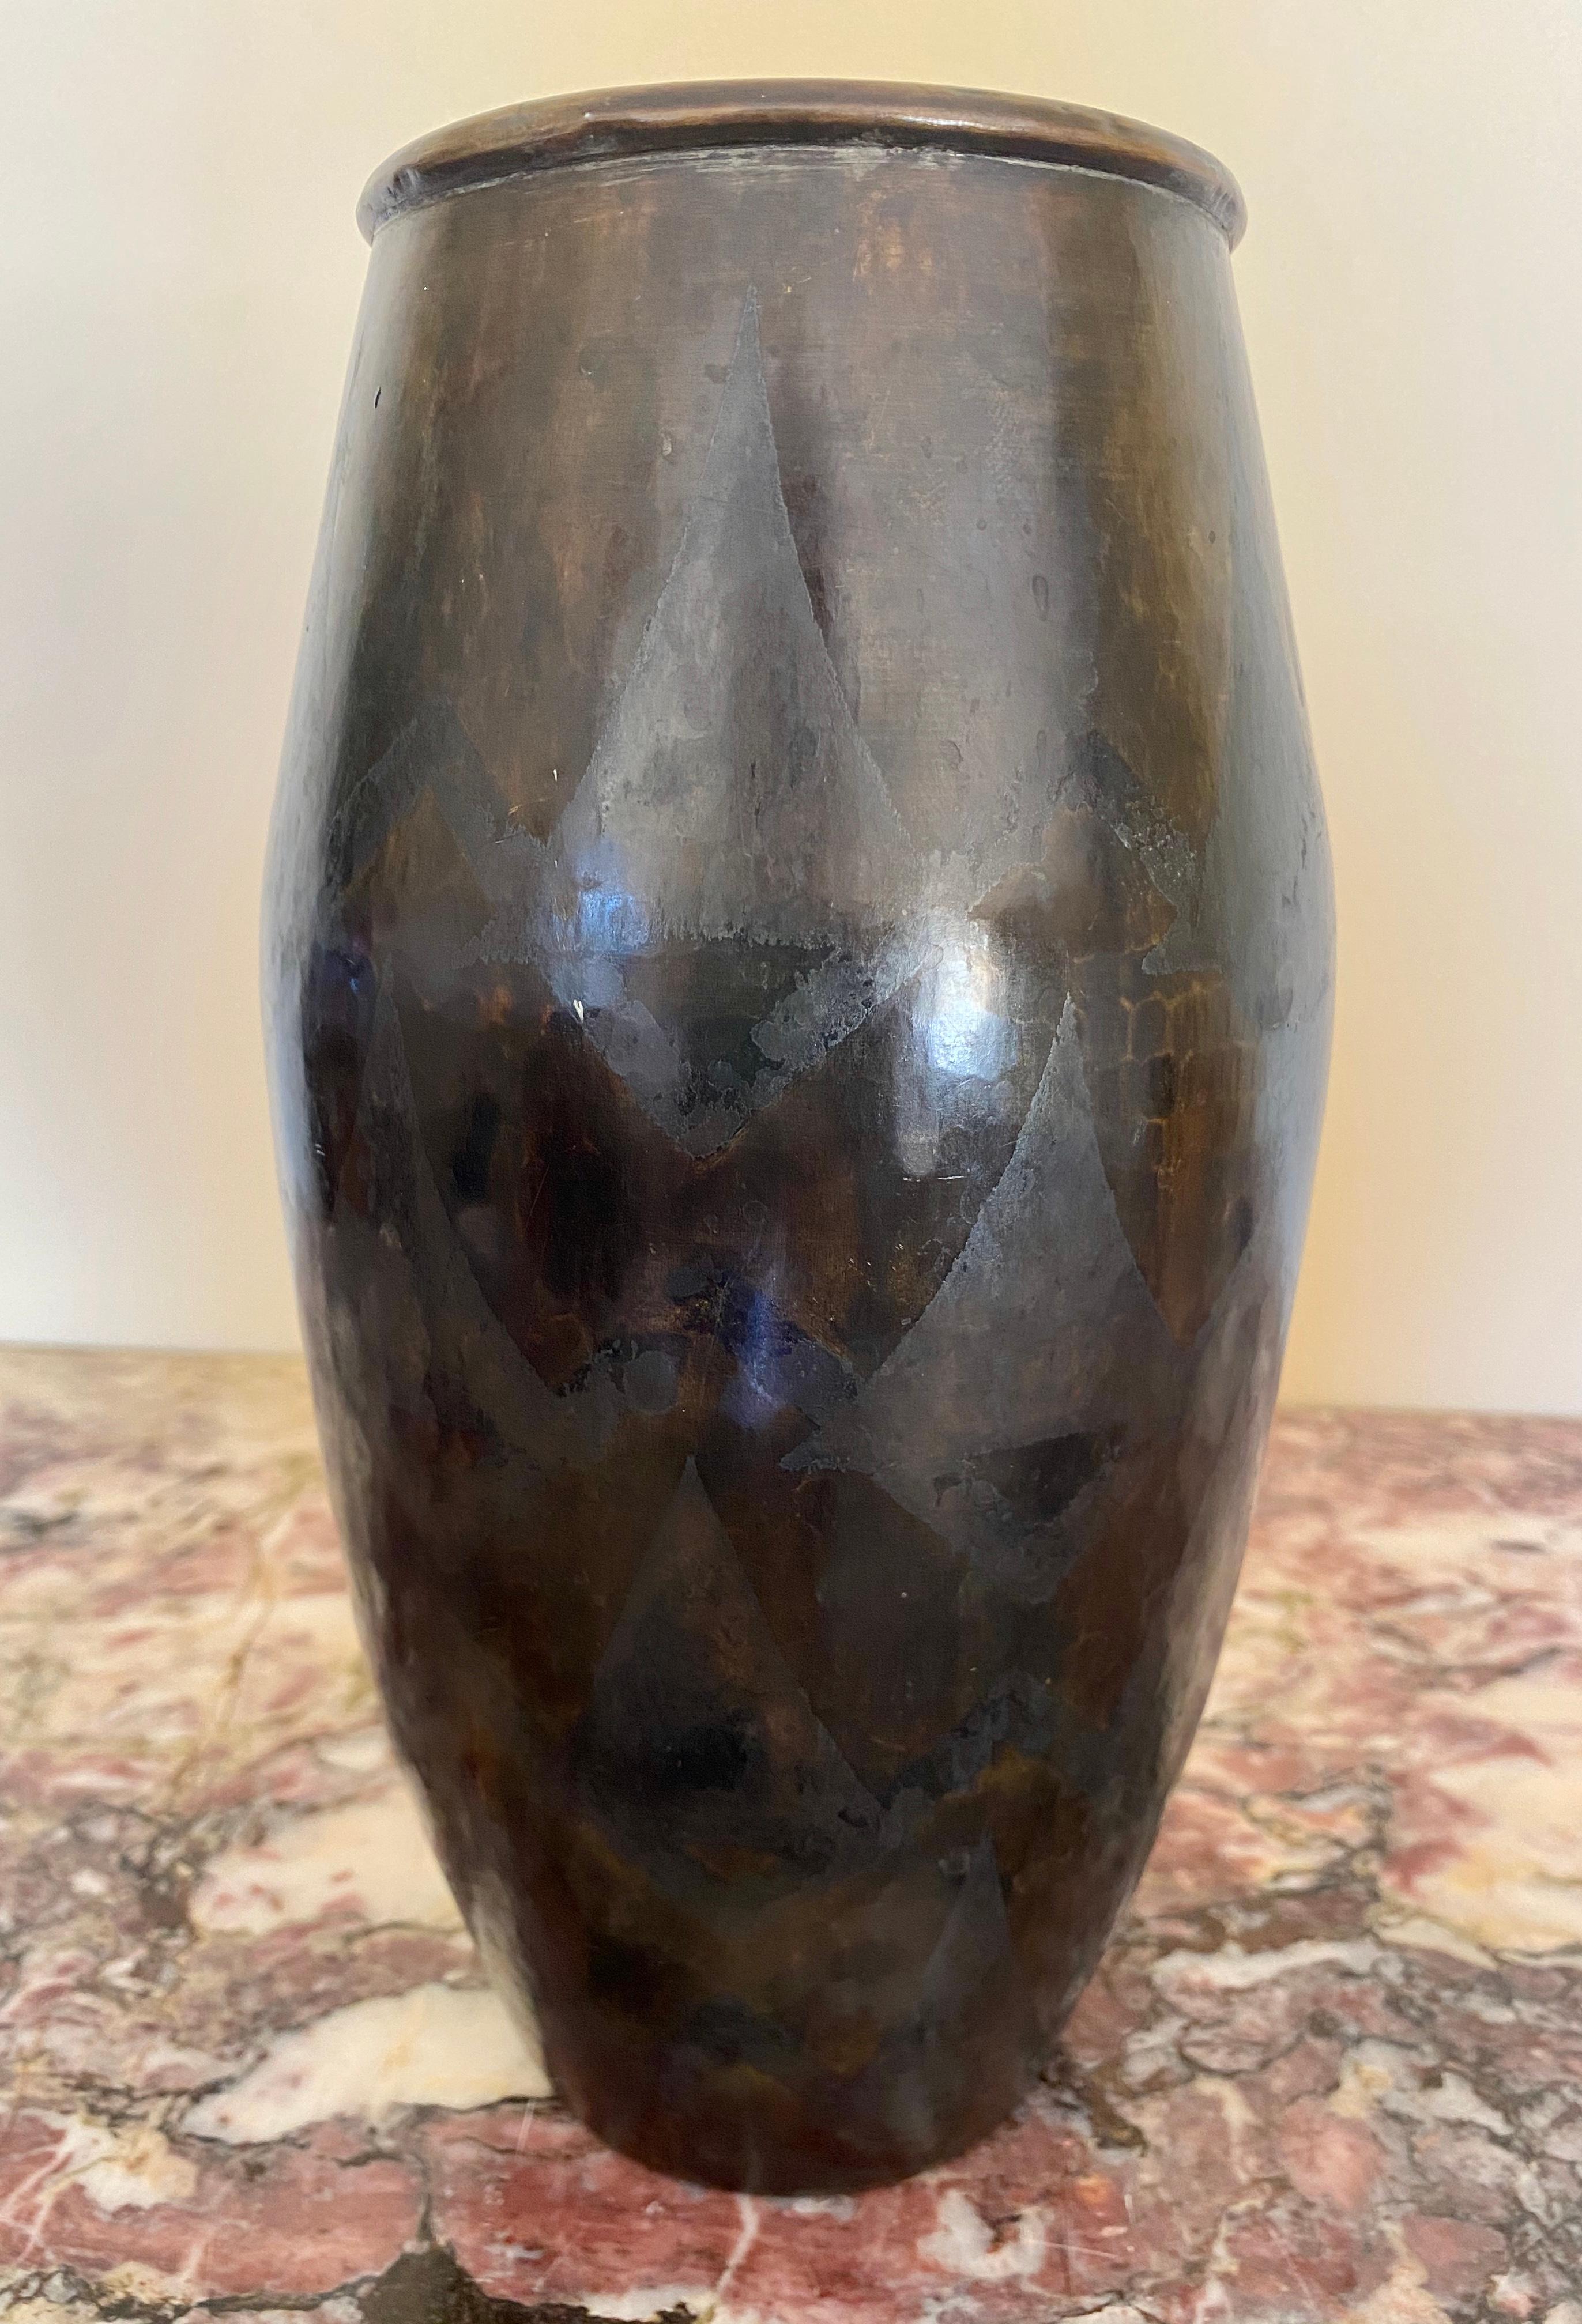 Grand vase ovoïde allongé en laiton entièrement martelé. Décor de triangles superposés, argent et bronze oxydés sur un fond à patine brune nuancée. Circa 1930/1935.
Signé en bas 